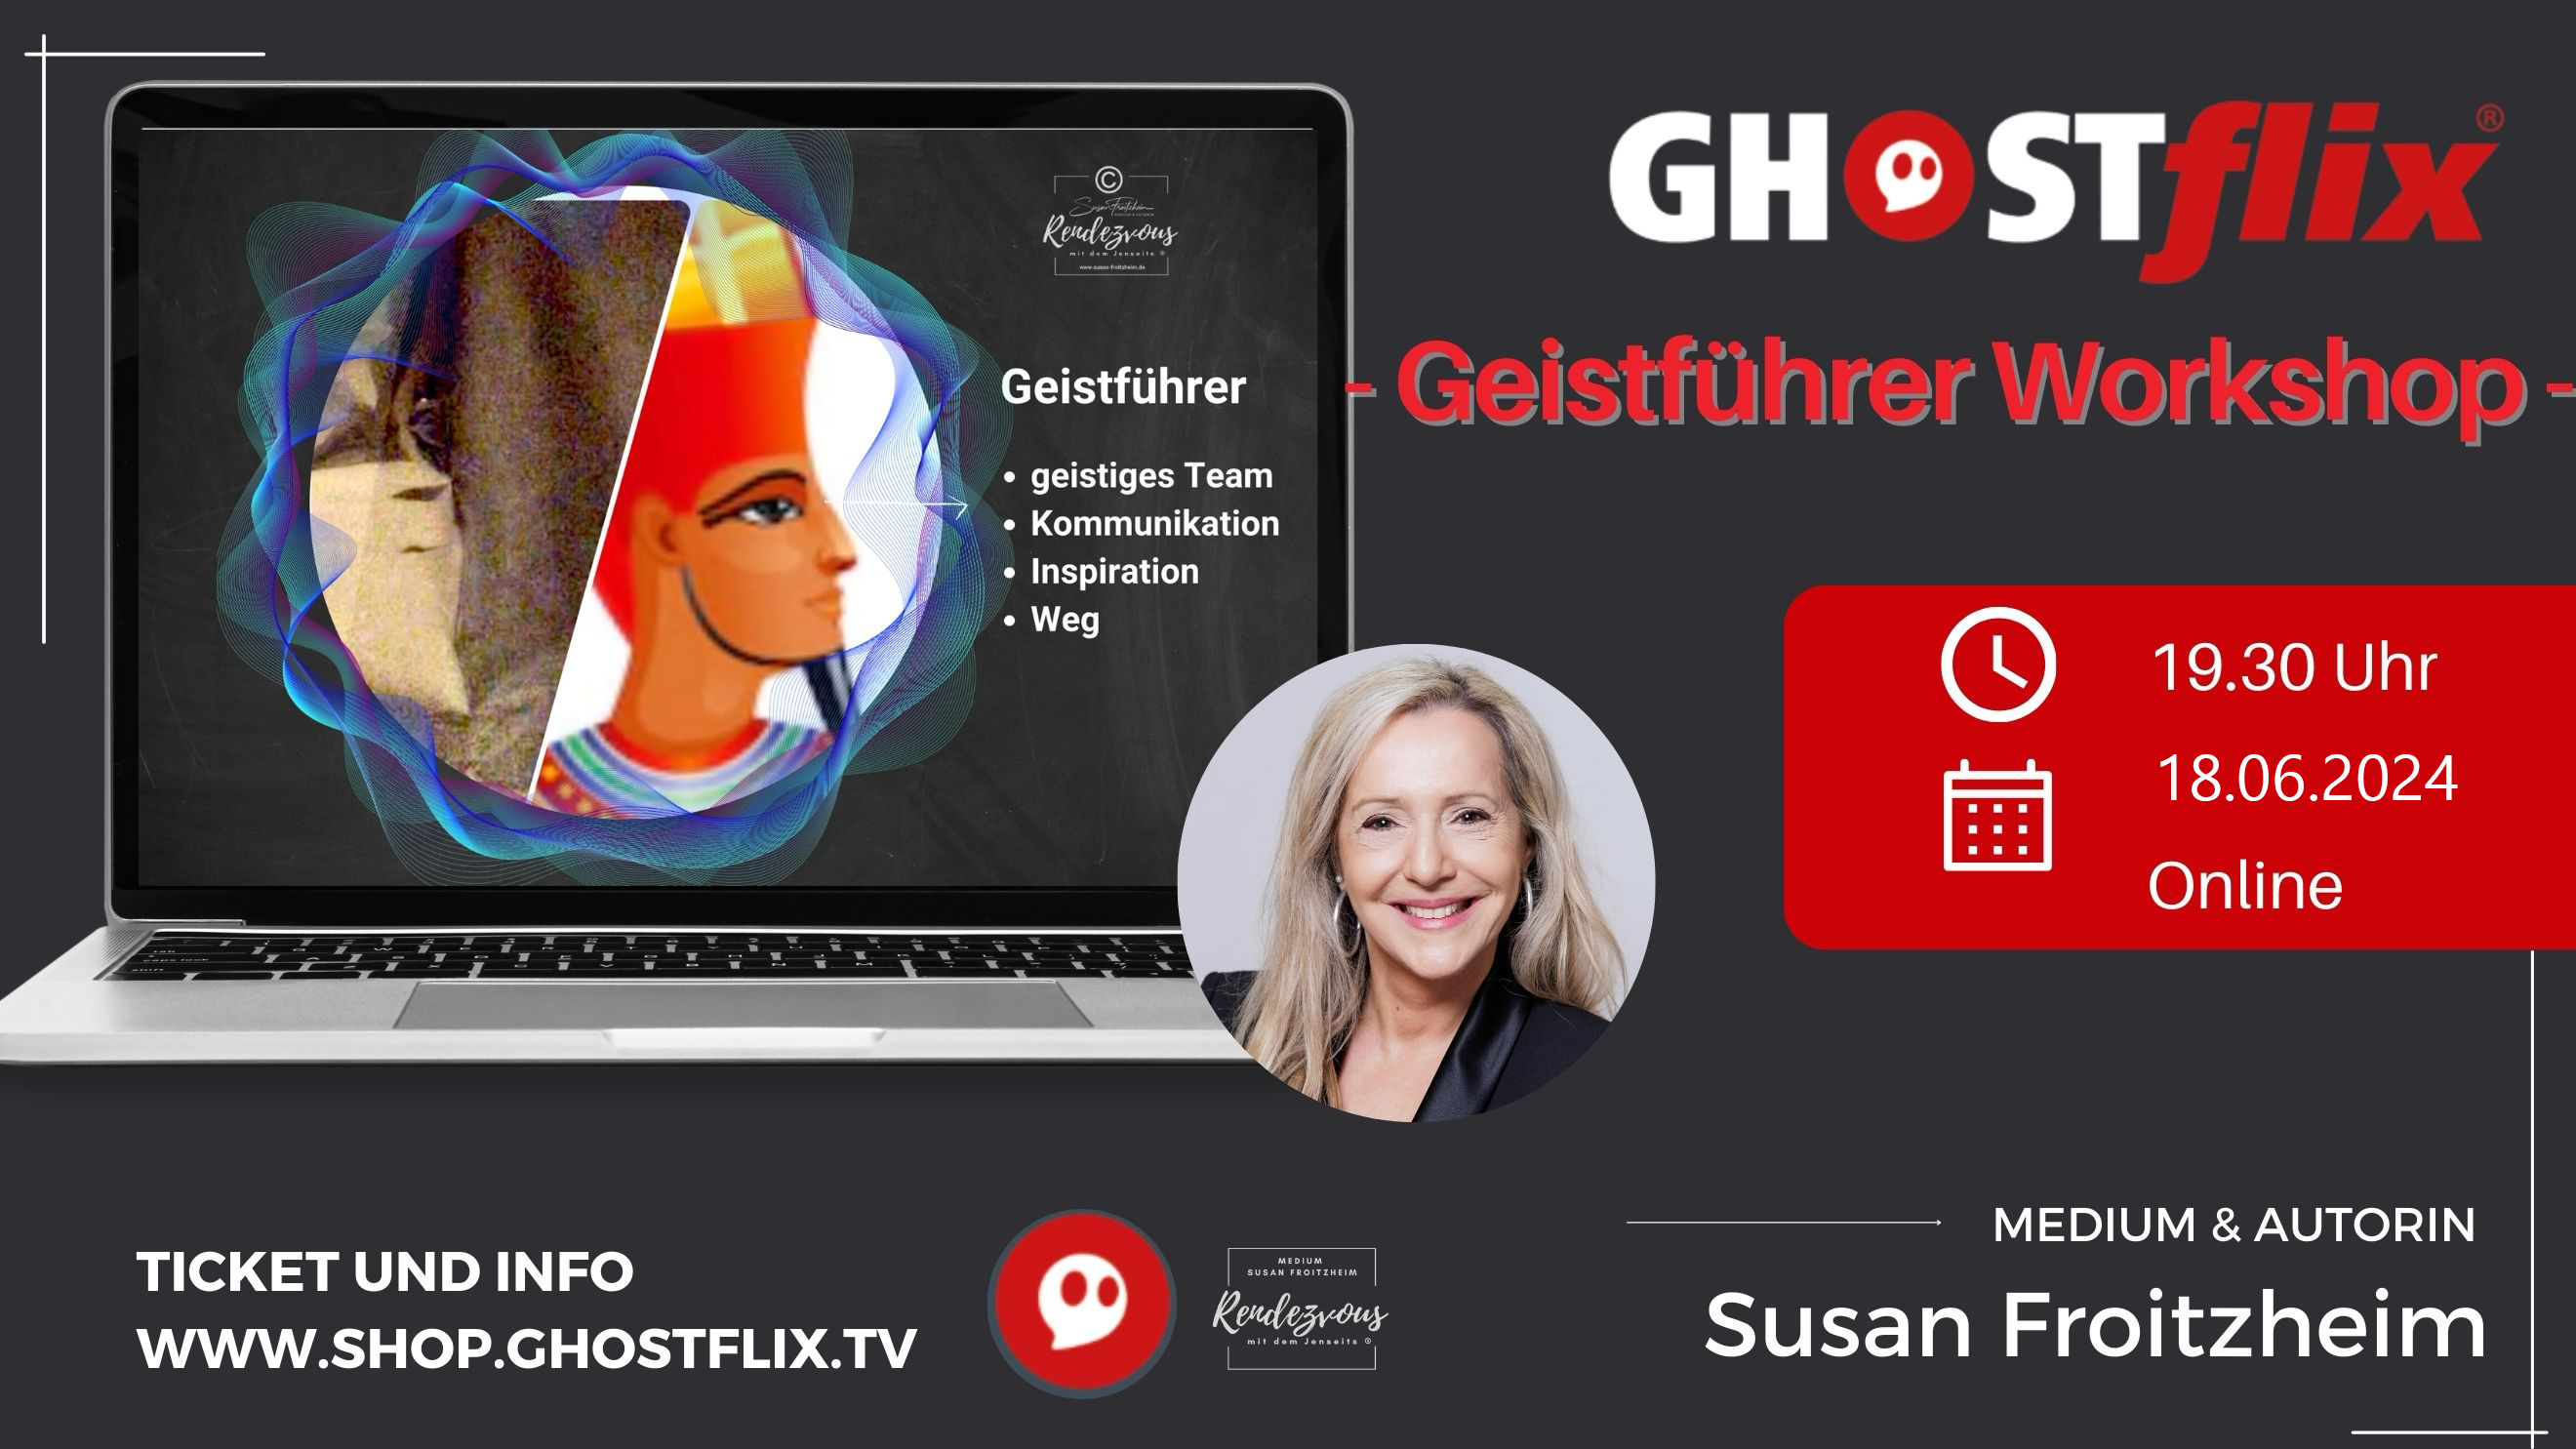 GHOSTflix Geistführer Workshop 18.06.2024 mit Medium Susan Froitzheim